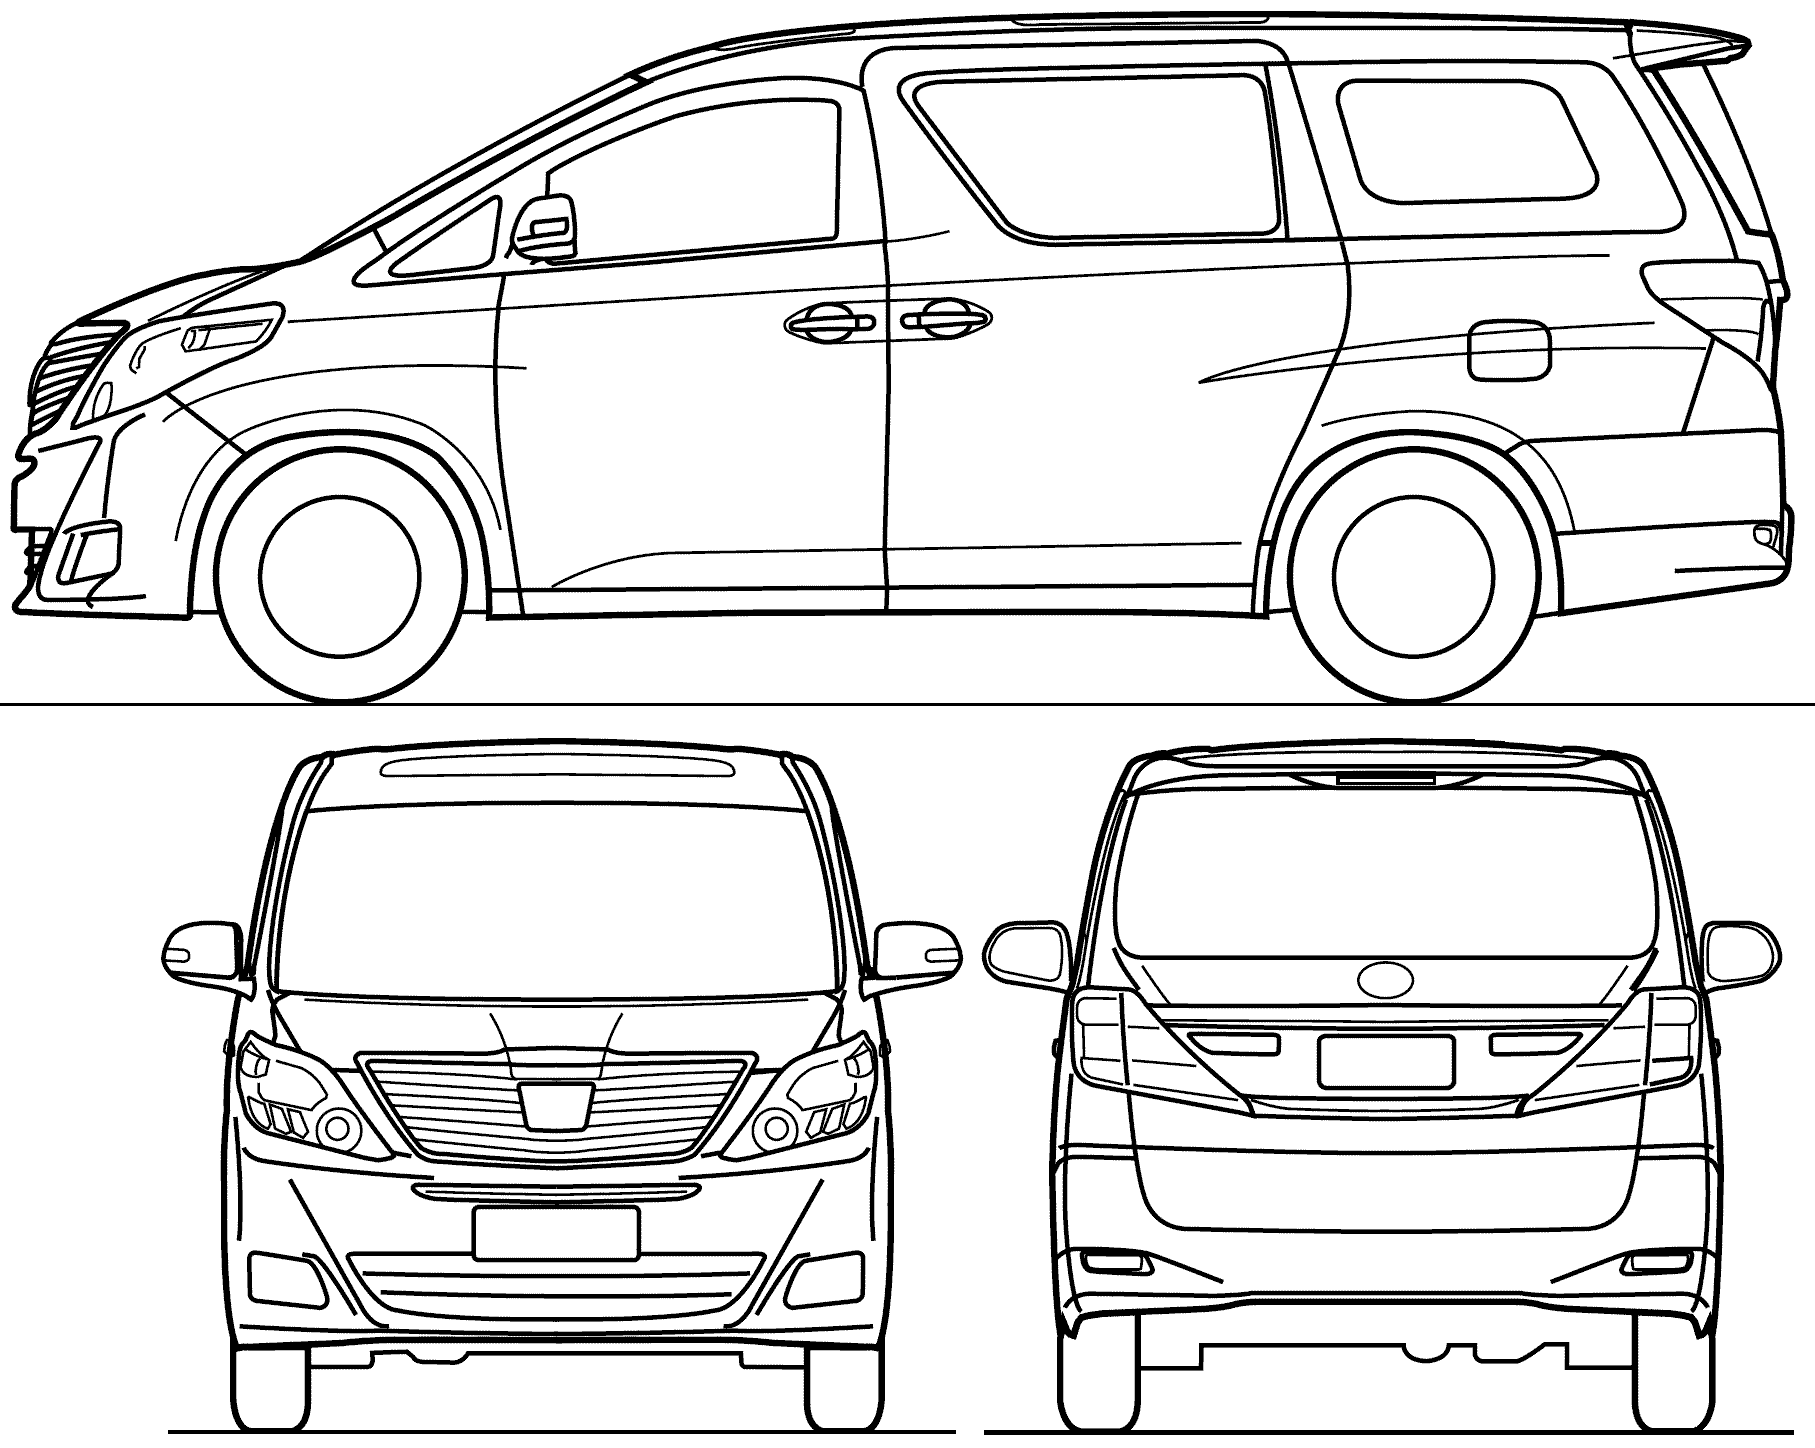 Toyota Alphard blueprint